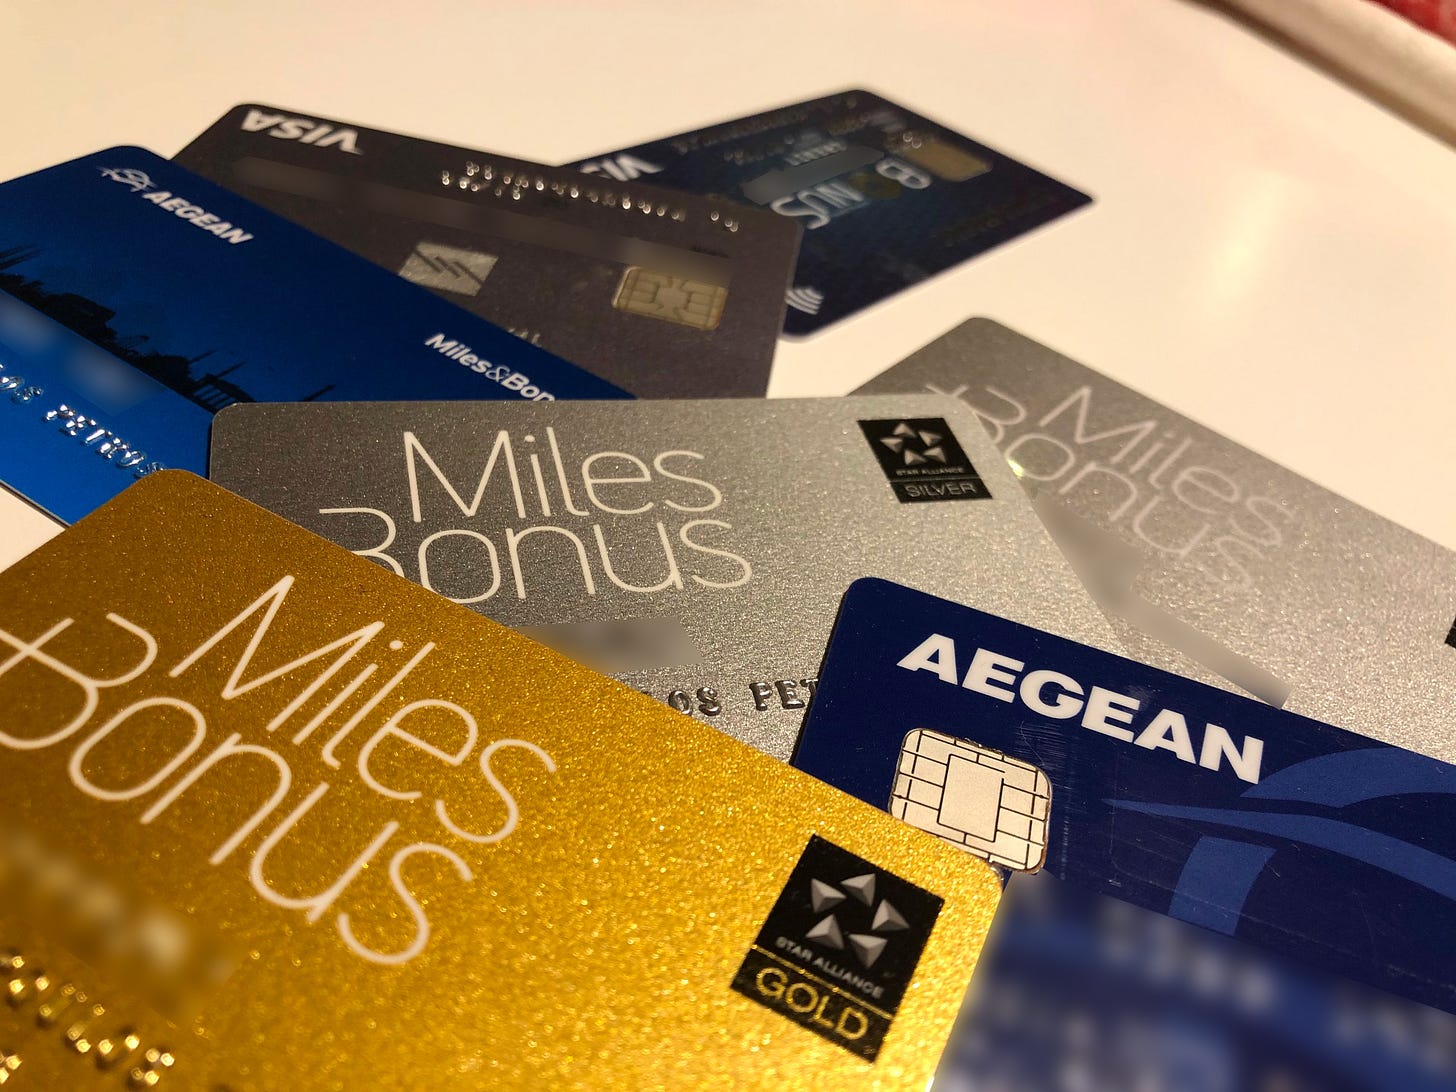 Κάρτες Miles+Bonus της Aegean Airlines